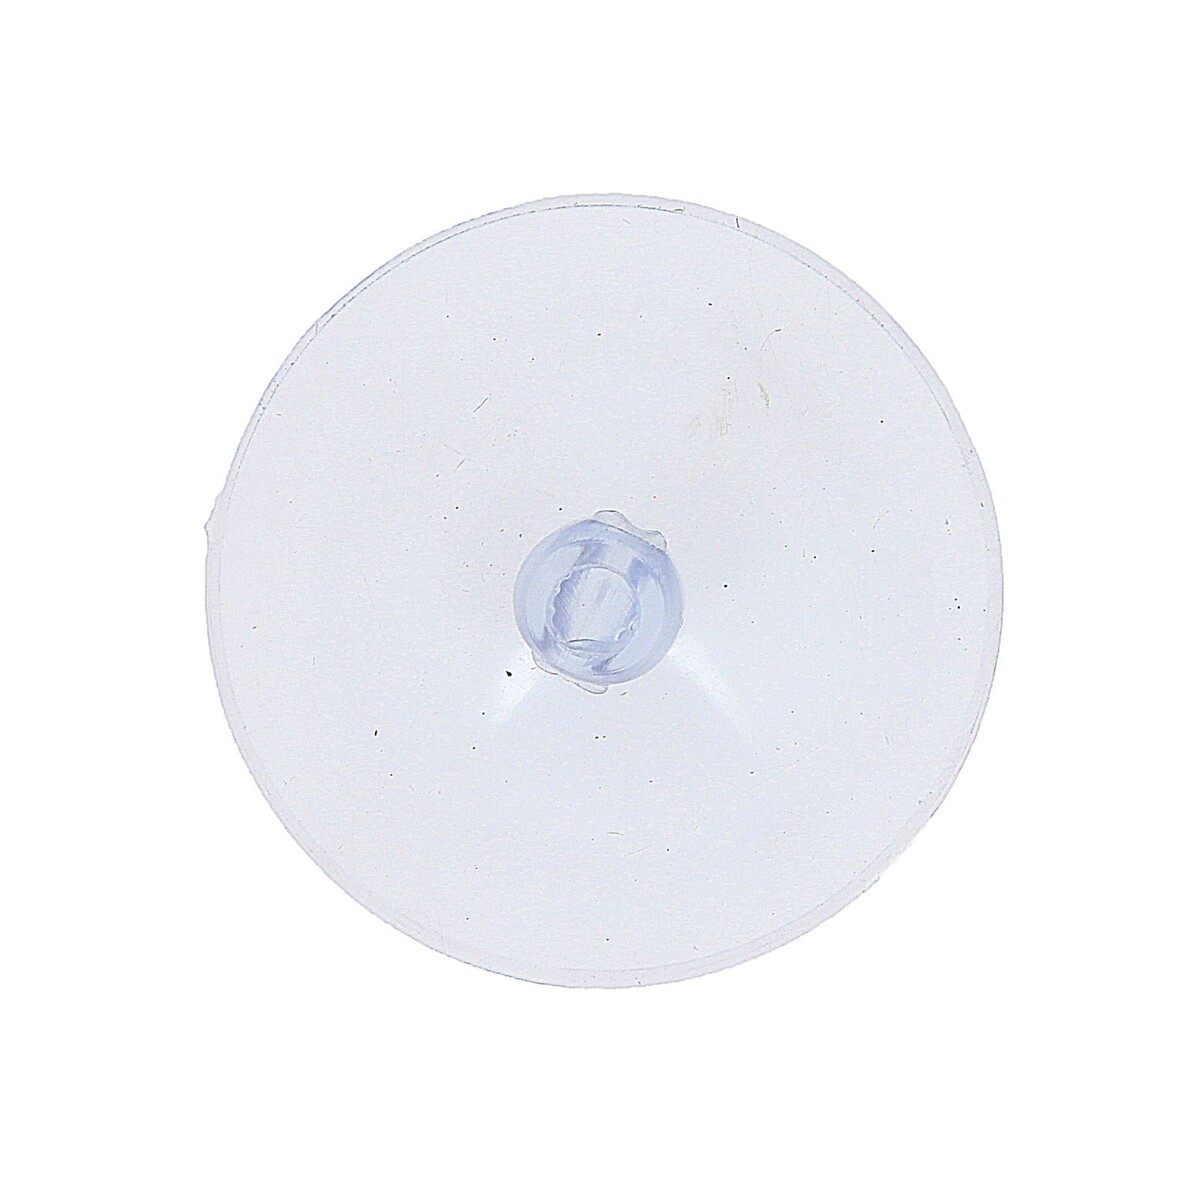 Присоска с дыркой сбоку, набор10 шт., диаметр: 4 см присоска с дыркой сбоку набор10 шт диаметр 3 см